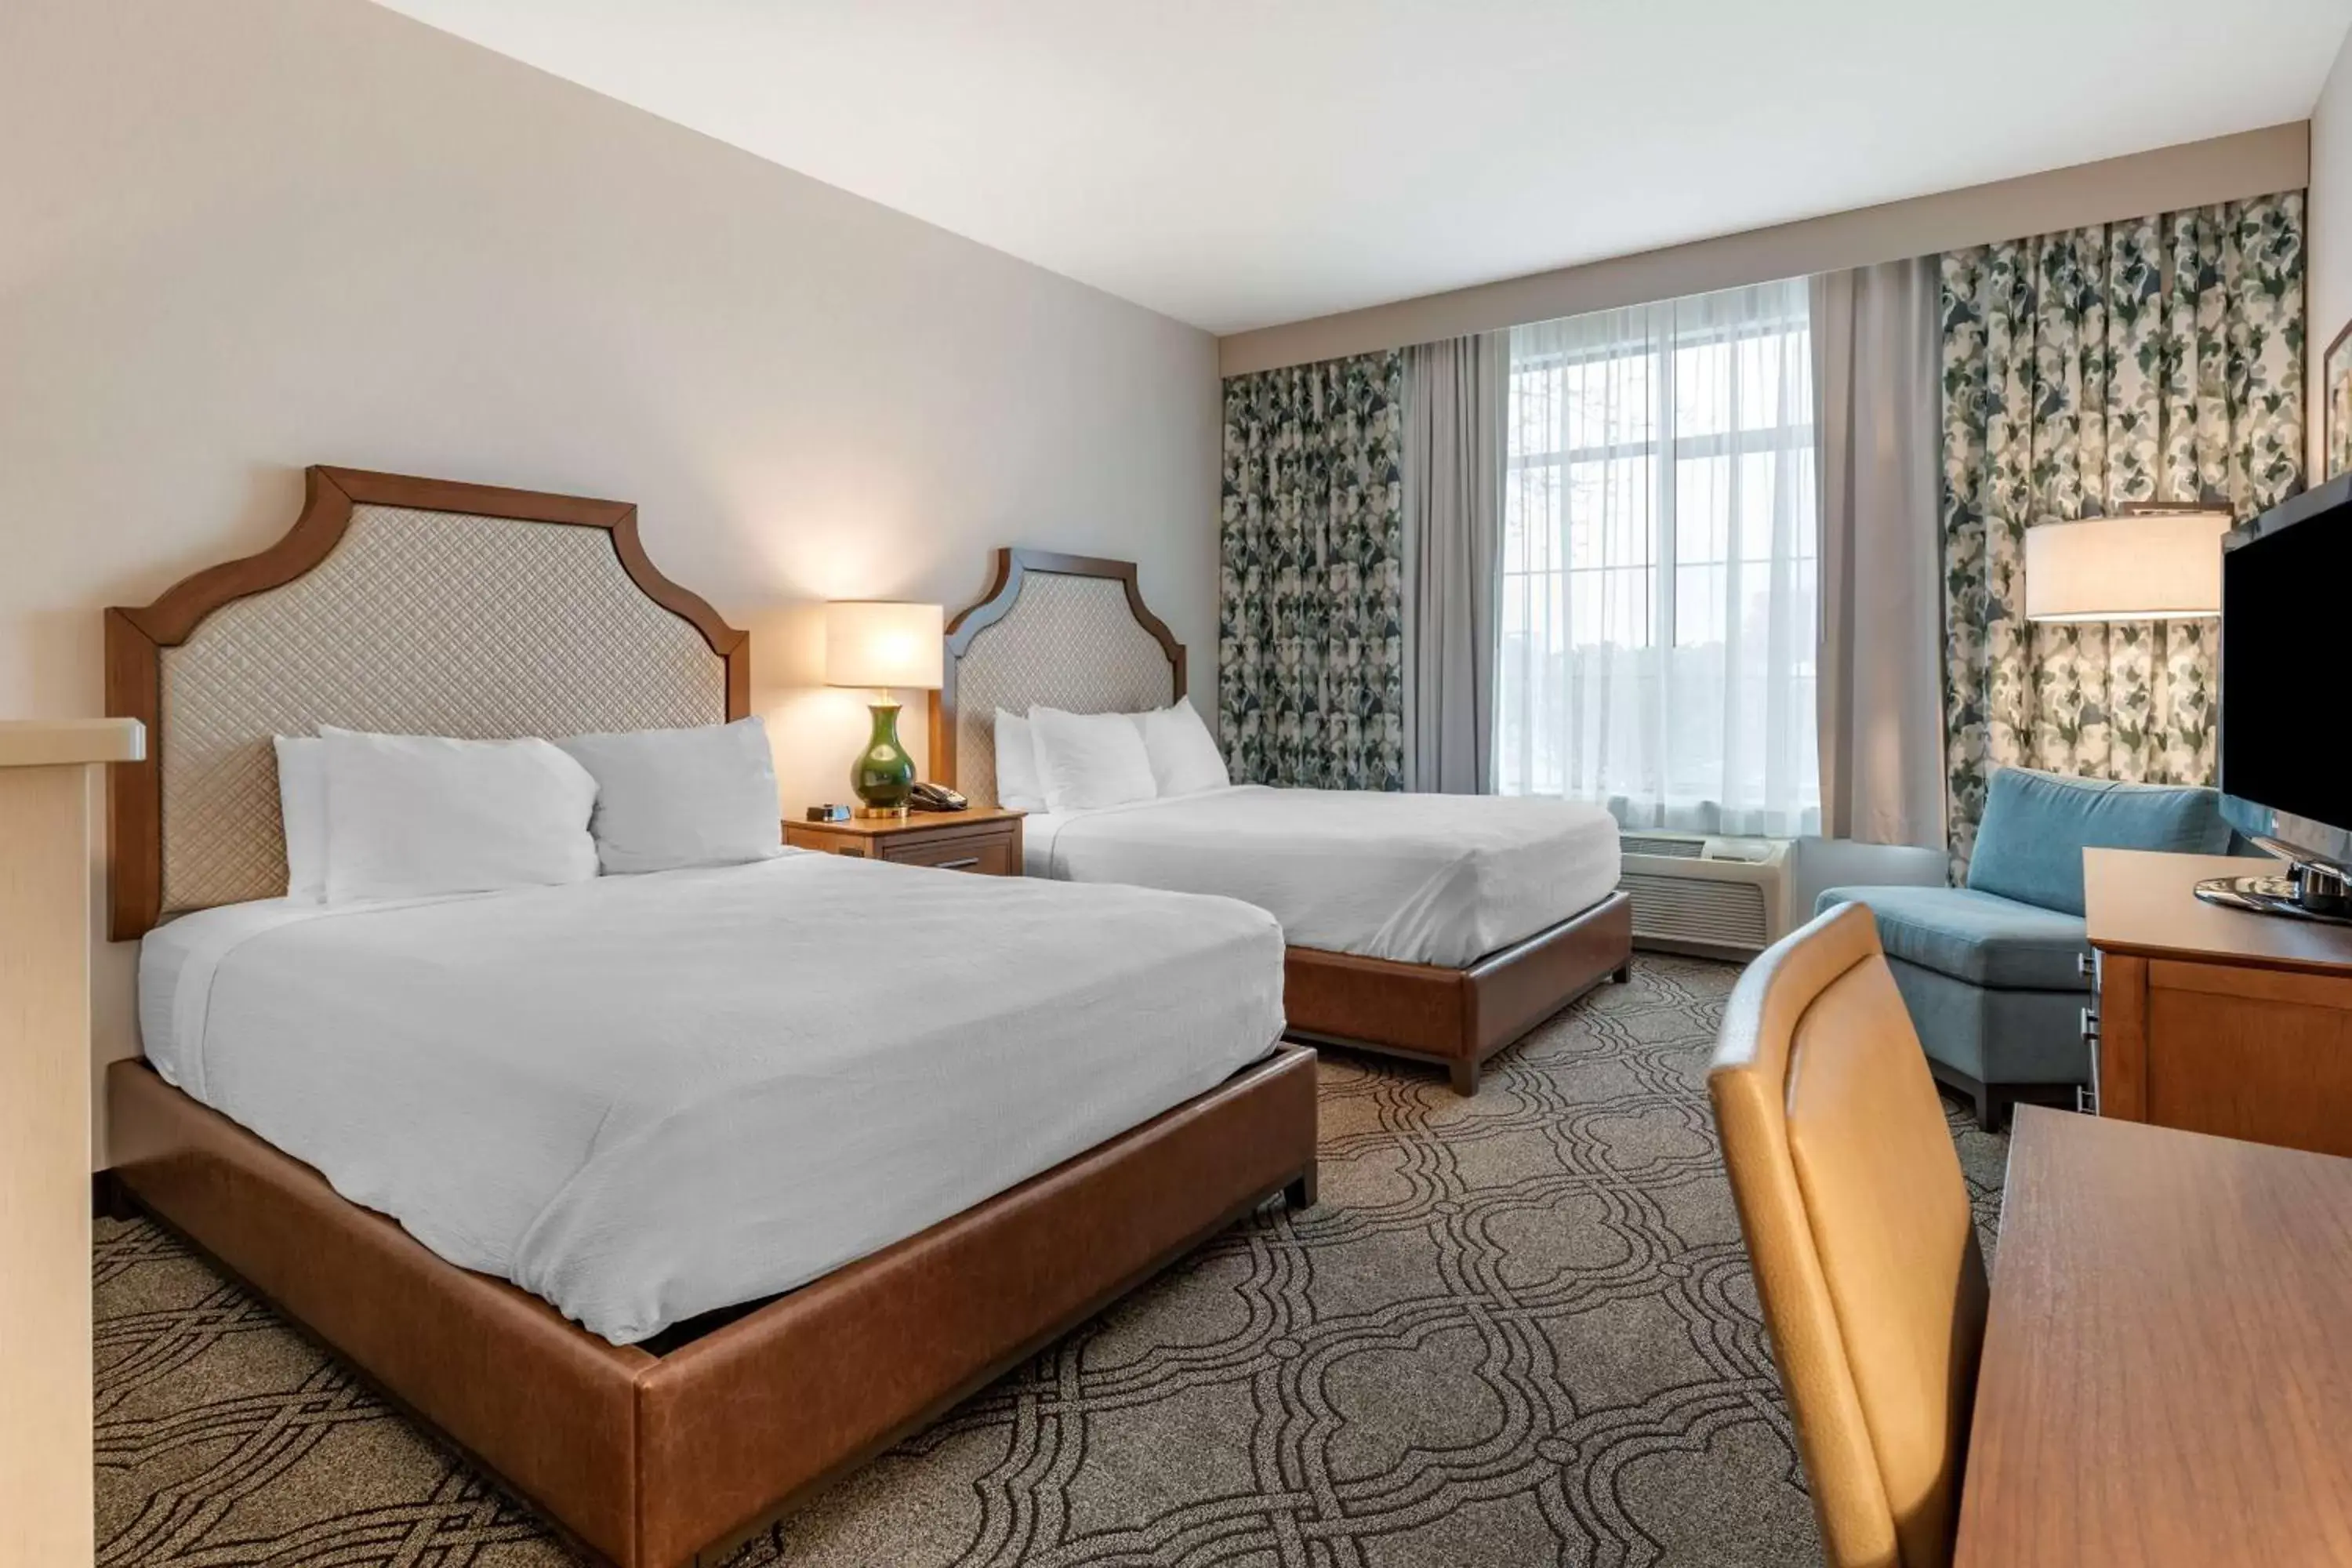 Bedroom, Bed in Best Western Premier Pasco Inn and Suites